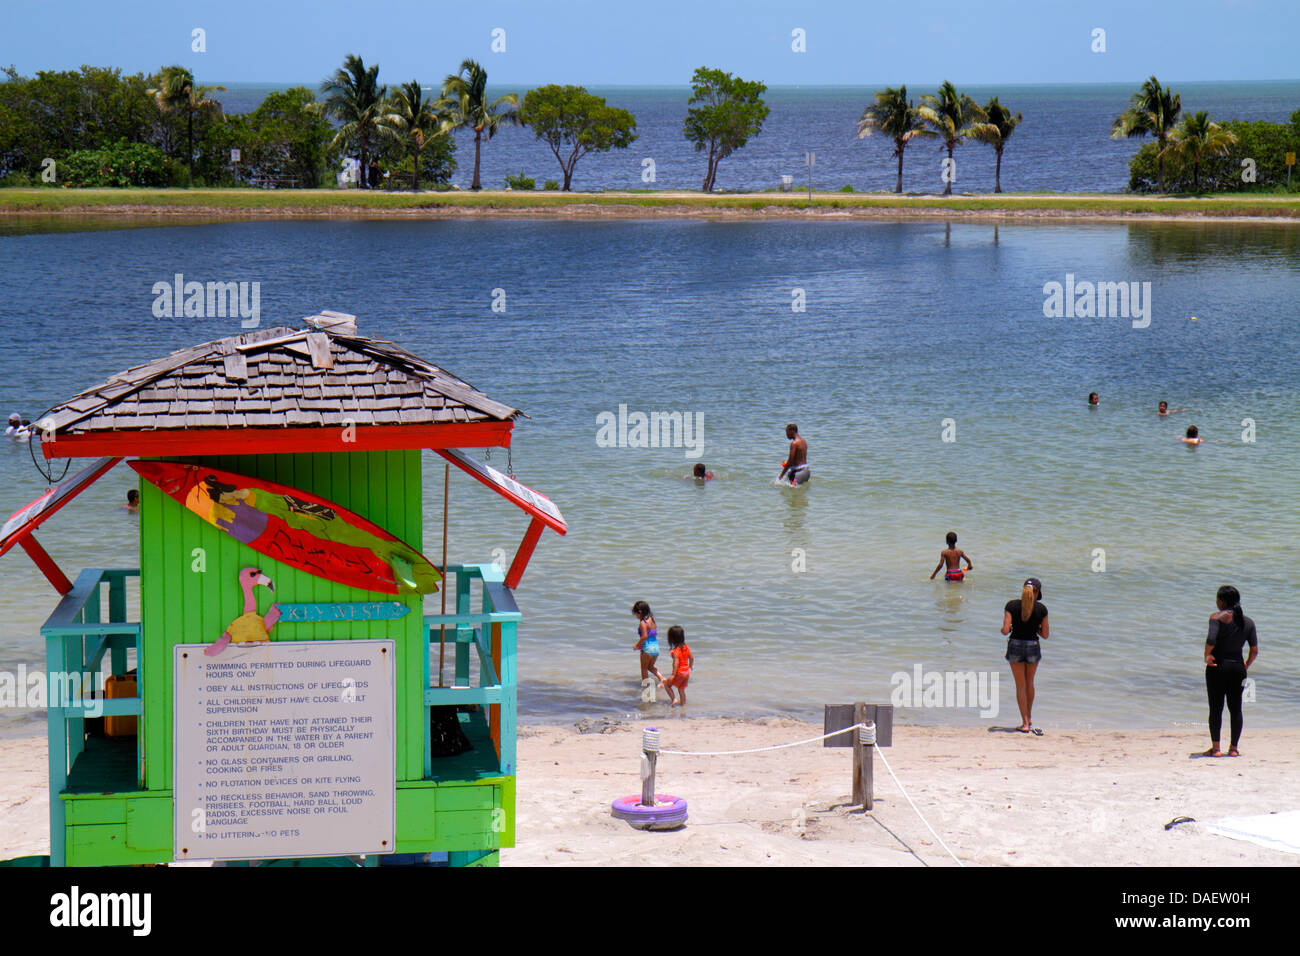 Miami Florida, Homestead, Homestead Bayfront Park, Biscayne Bay, Sonnenanbeter, Familien, Strand, Sand, Rettungsschwimmerstation, FL130518128 Stockfoto